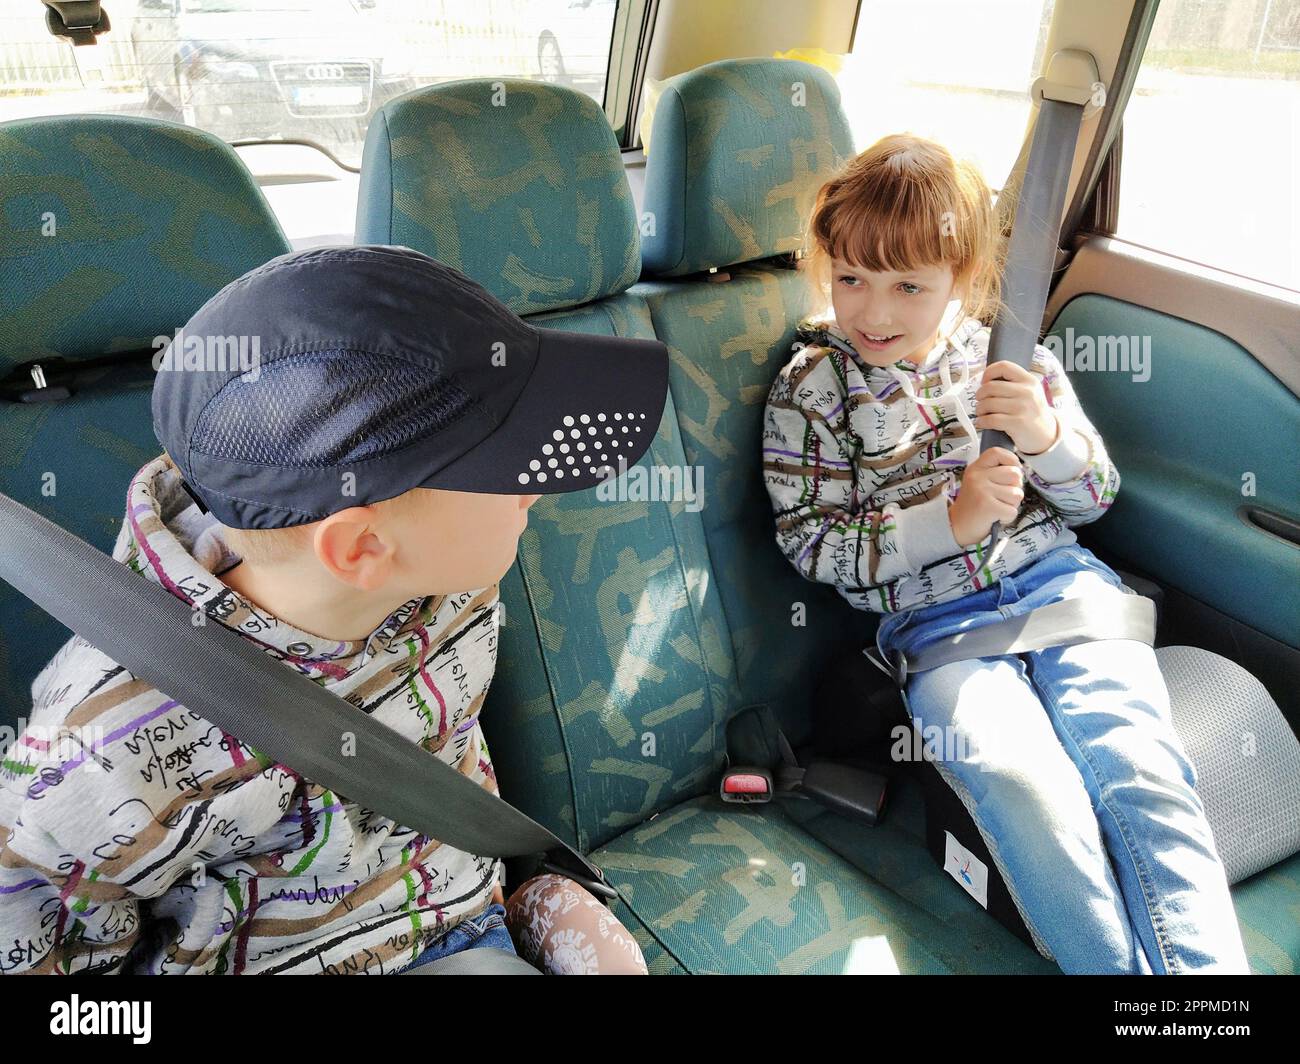 Kinder im Auto. Ein Junge und ein Mädchen sitzen auf dem Rücksitz, lachen  und grimpern. Kinder schnallen sich an. Ein Kind mit Mütze. Zwillinge mit  verschiedenen Gesichtern, die in derselben Kleidung gekleidet